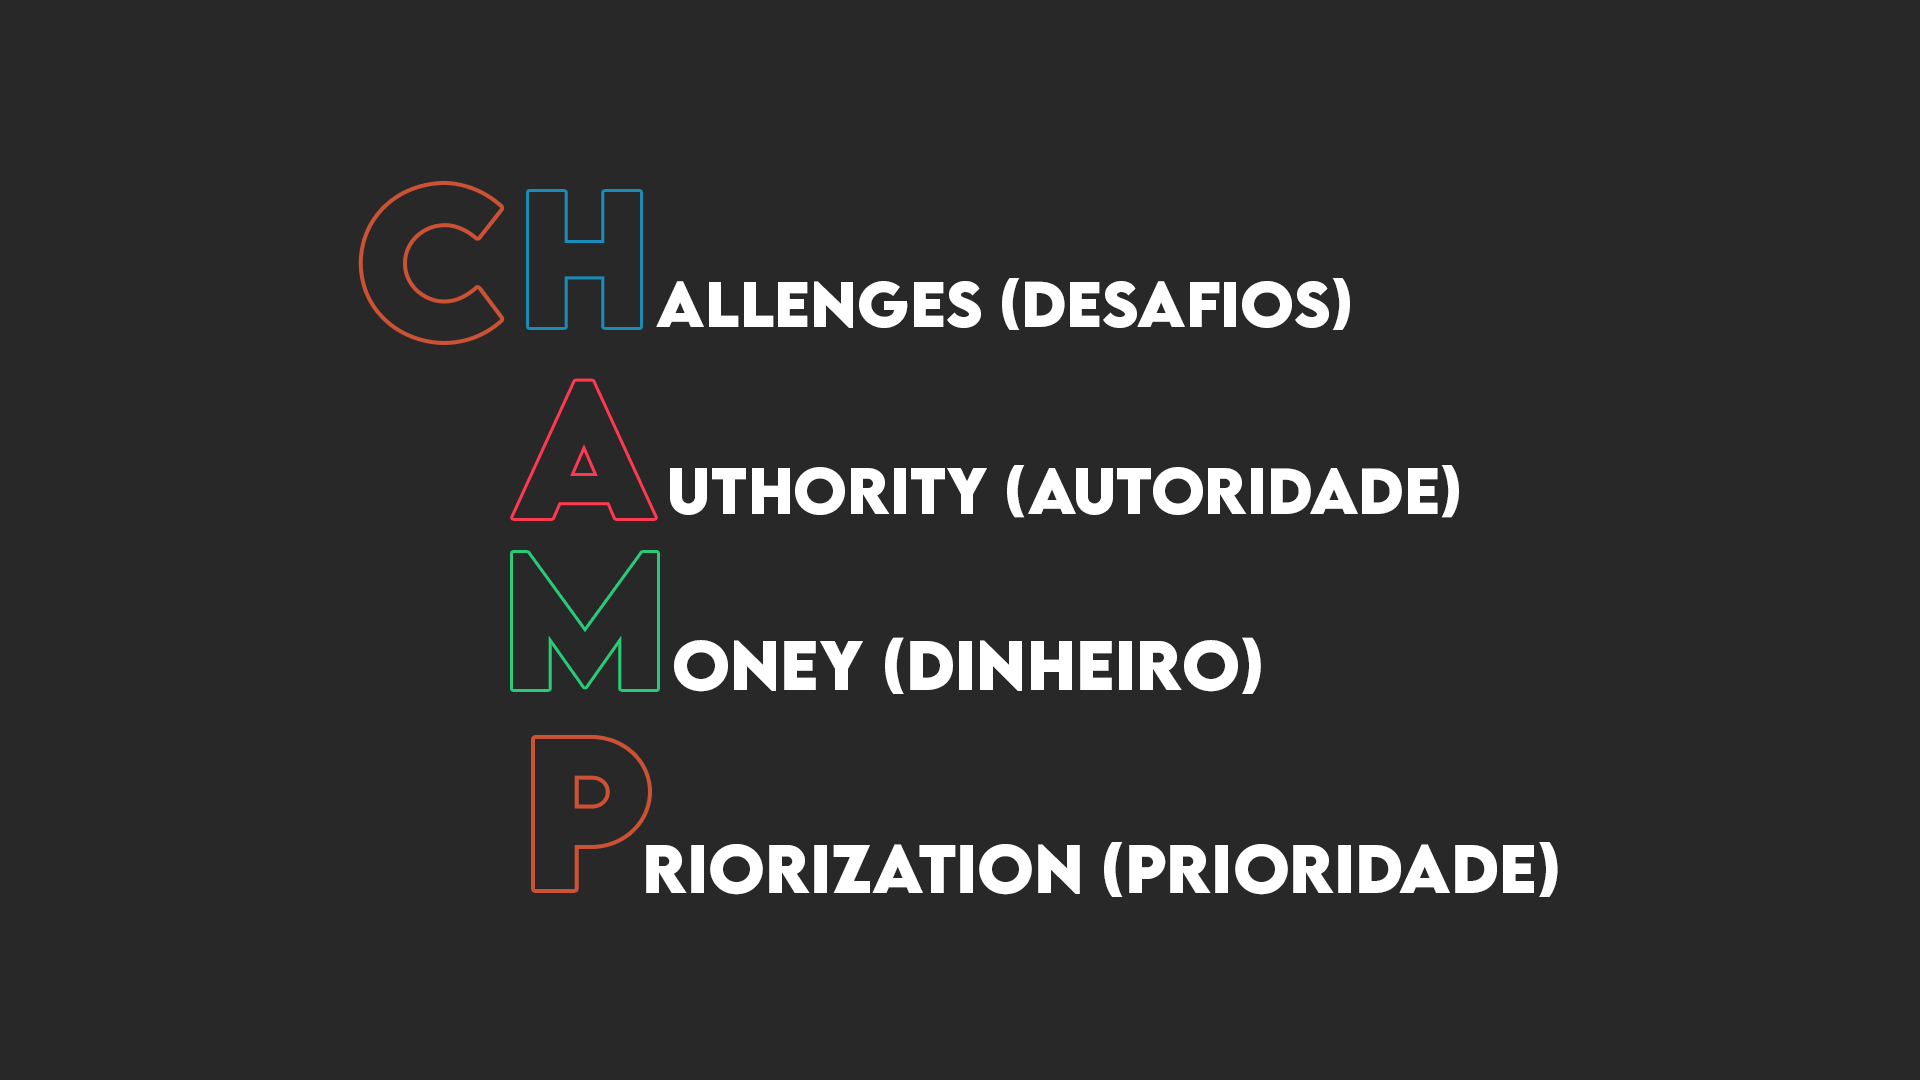 CHAMP leads qualificados, challegens (desafios), authority (autoridade), money (dinheiro), priorization (prioridade).